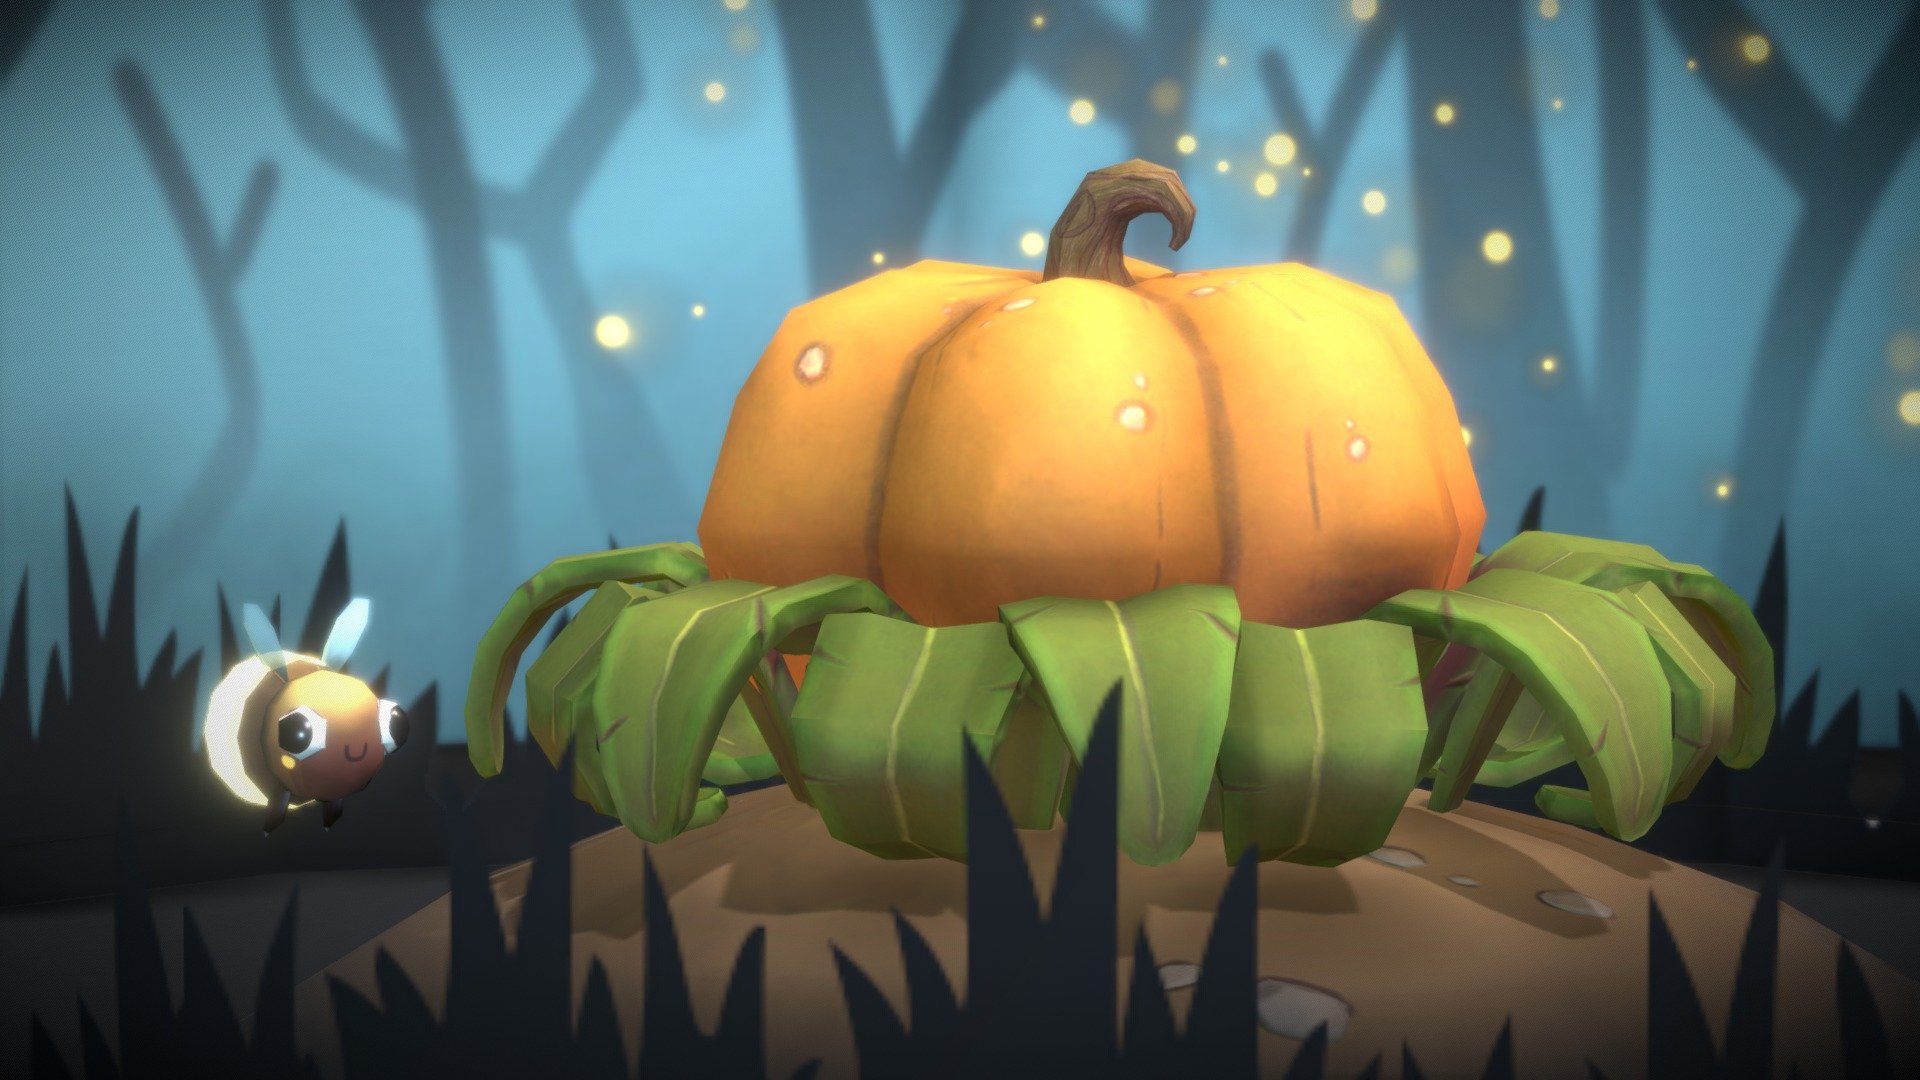 Pumpkin and fireflies - 3D model by AnaSalcedo 3d model